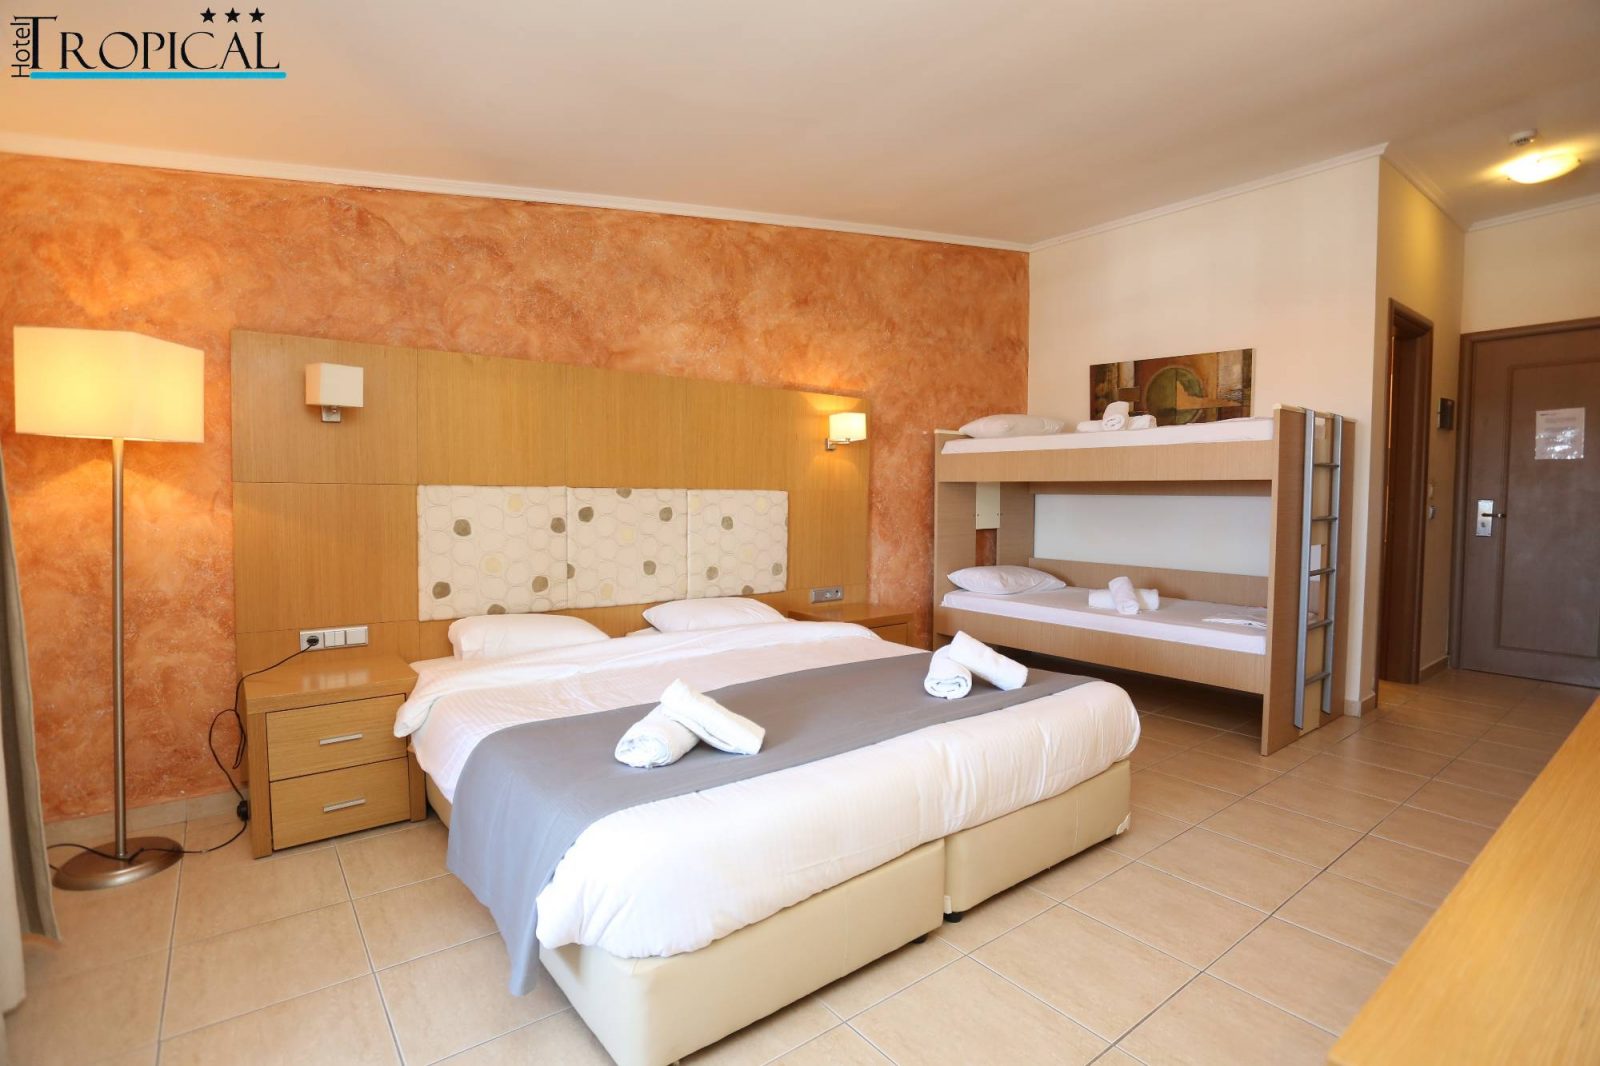 Grcka hoteli letovanje, Halkidiki, Hanioti,Tropical,soba sa krevetima na sprat